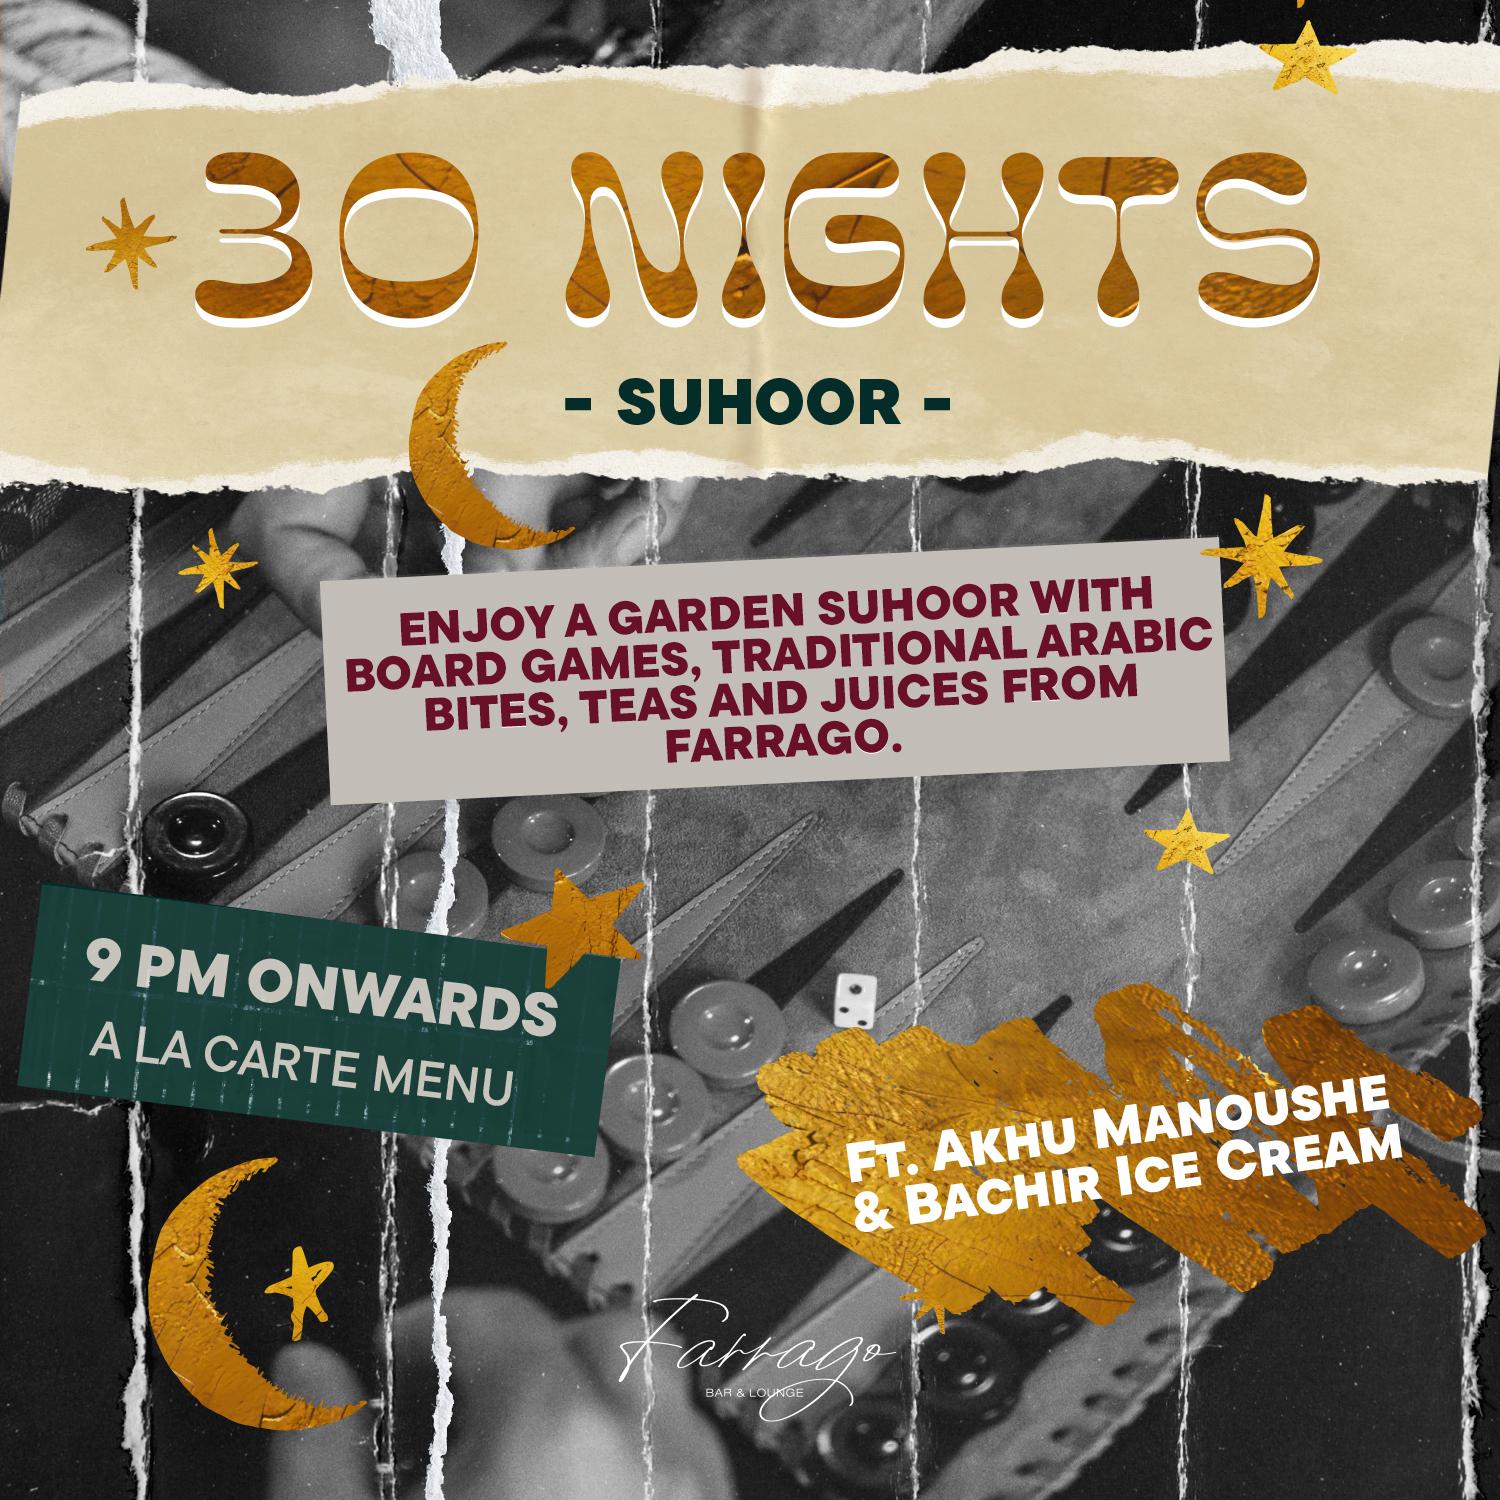 30 nights – Suhoor – at Farrago